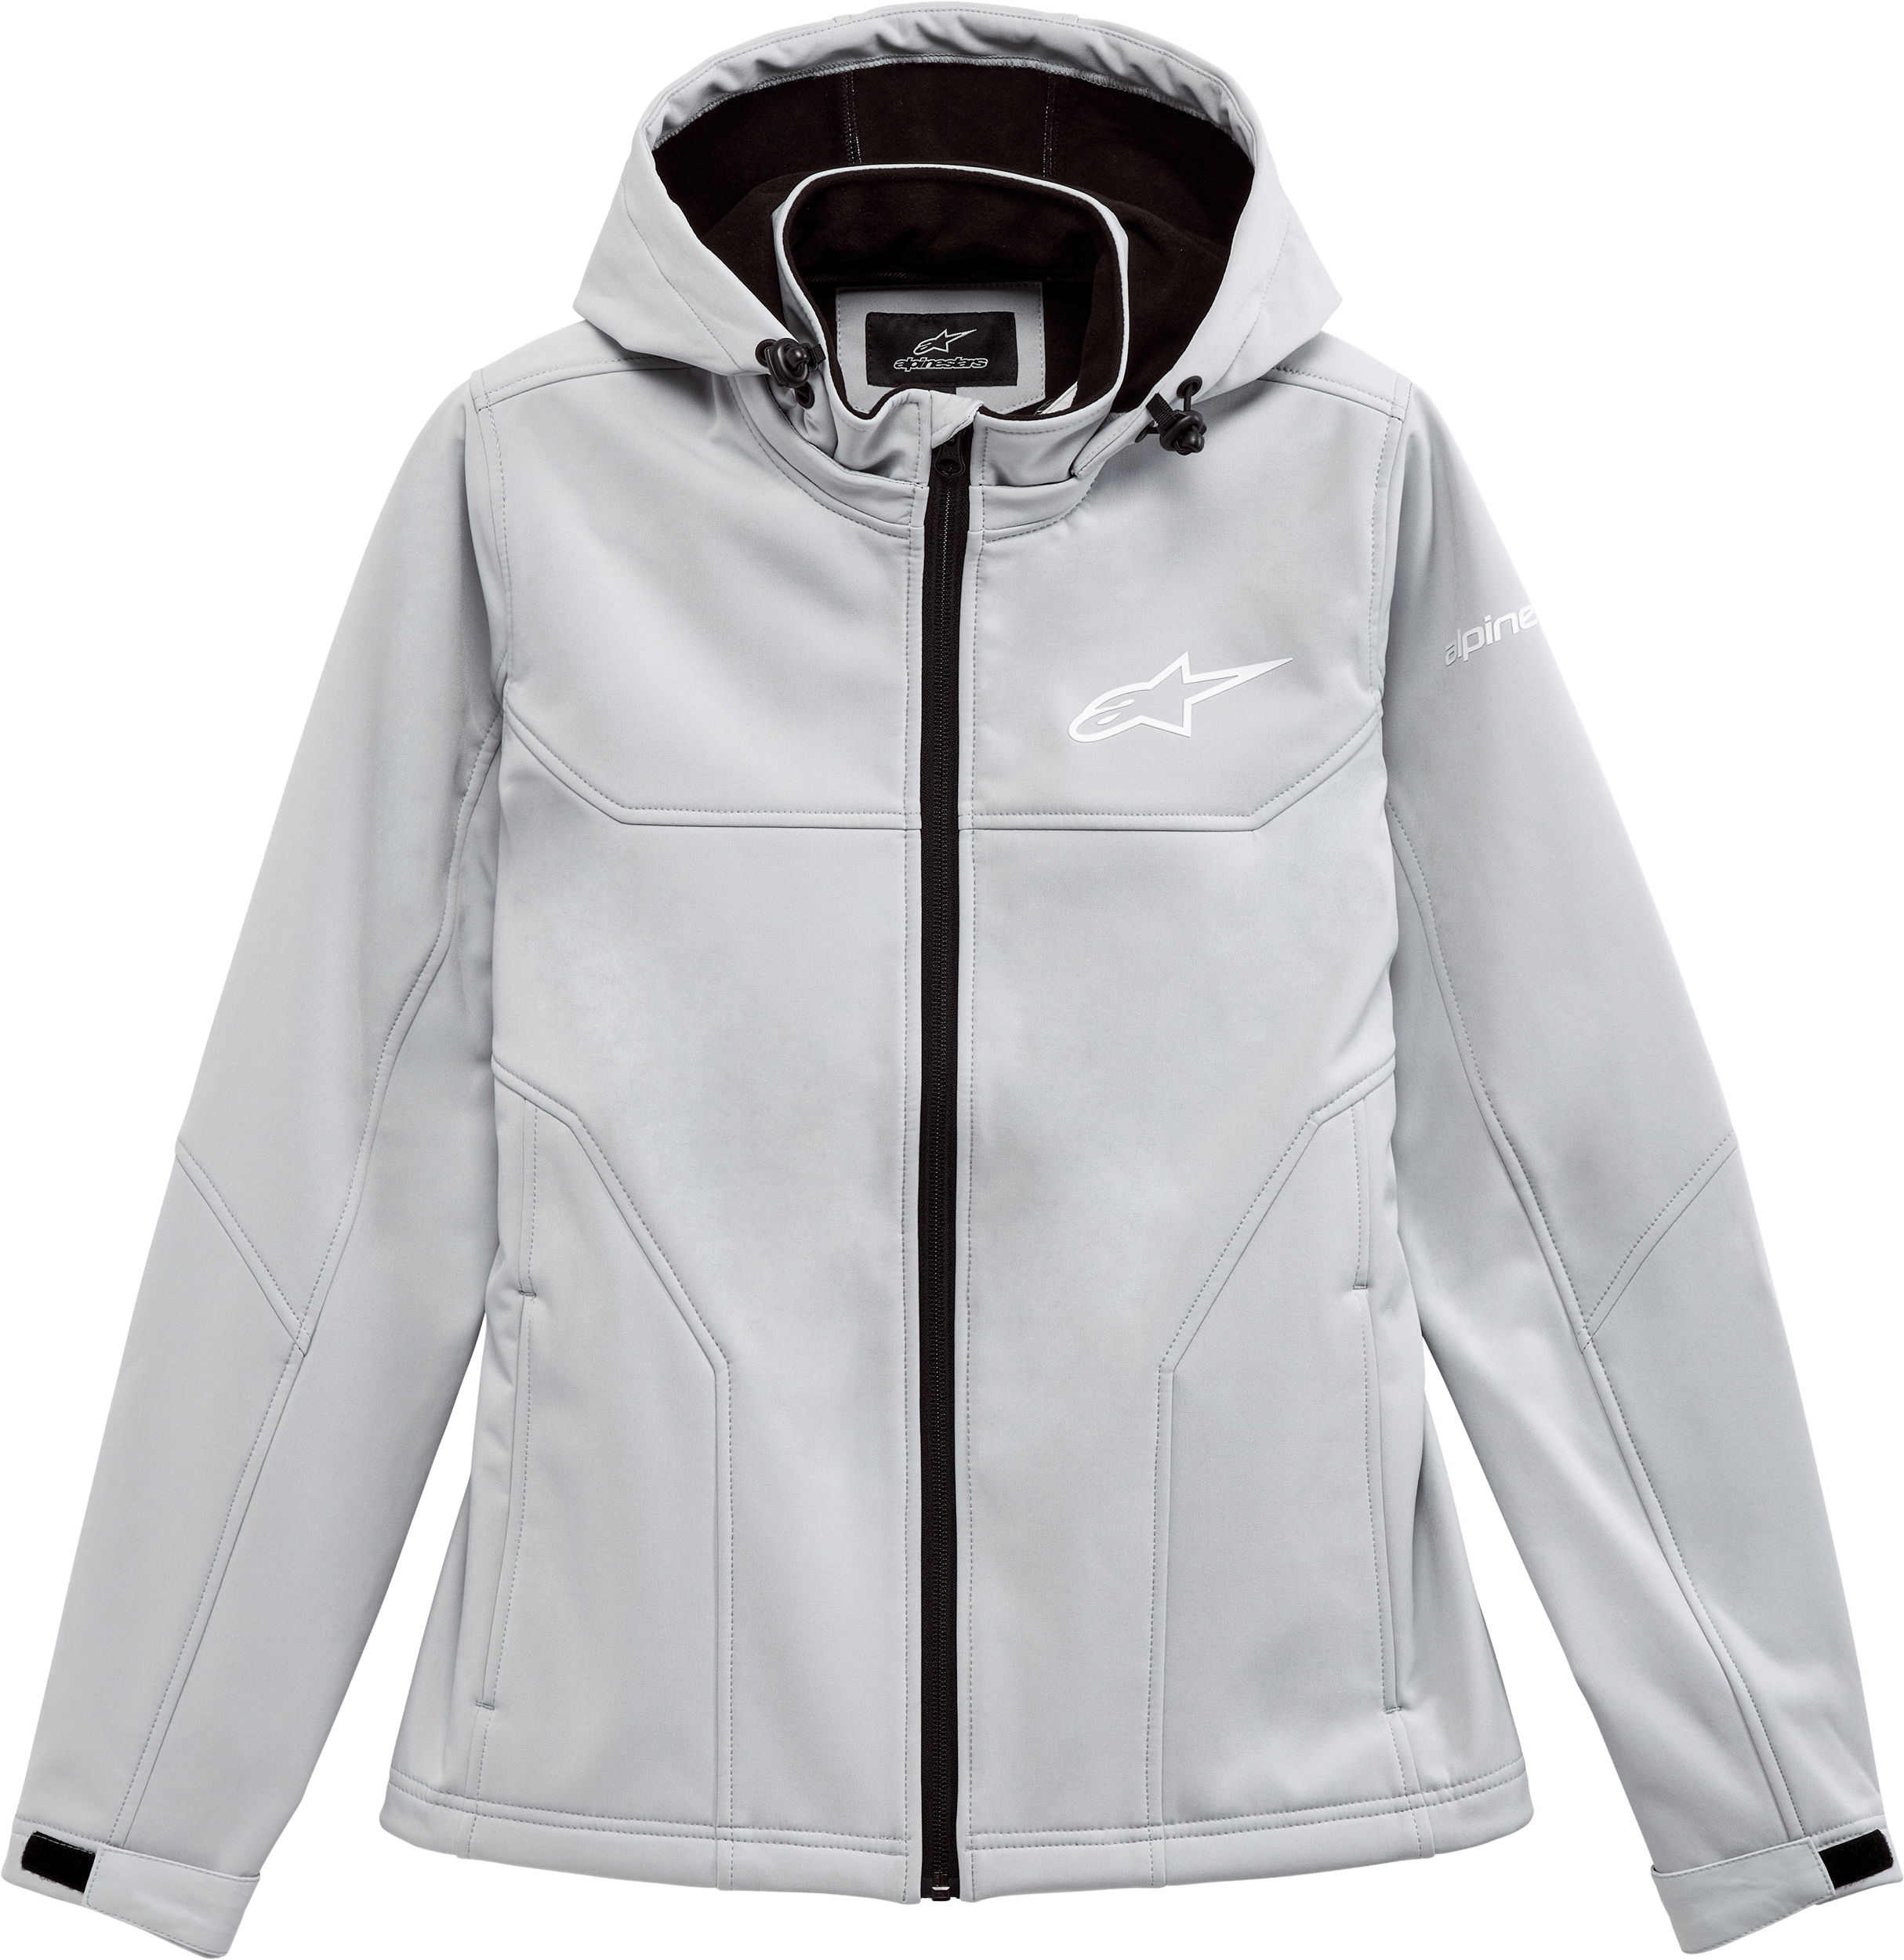 Western Powersports Jacket Ice / 2X Women's Primary Jacket By Alpinestars 1232-11900-7221-XXL